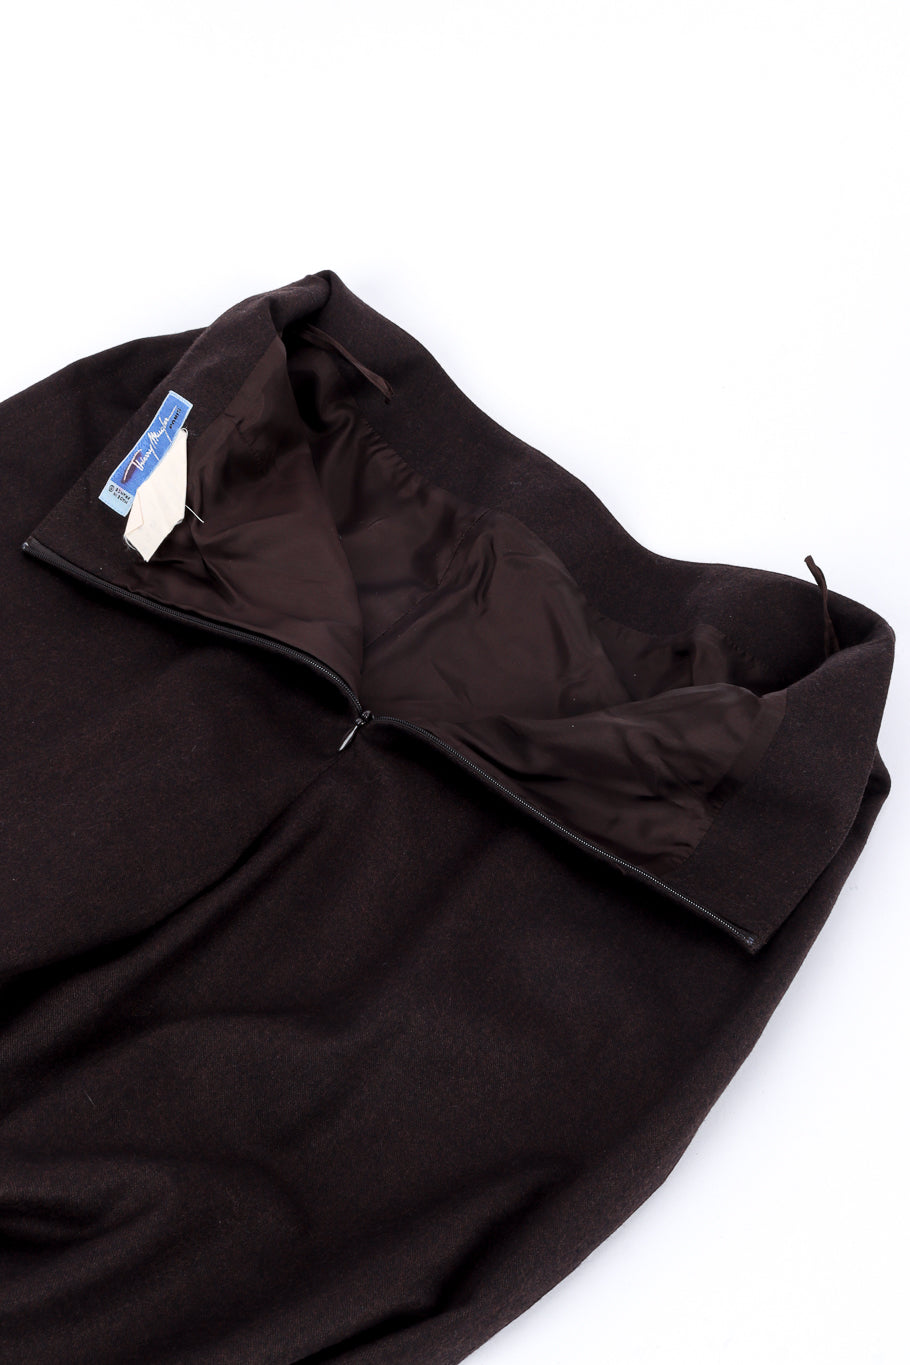 Vintage Thierry Mugler Sculpted Pantsuit pant unzipped @recessla